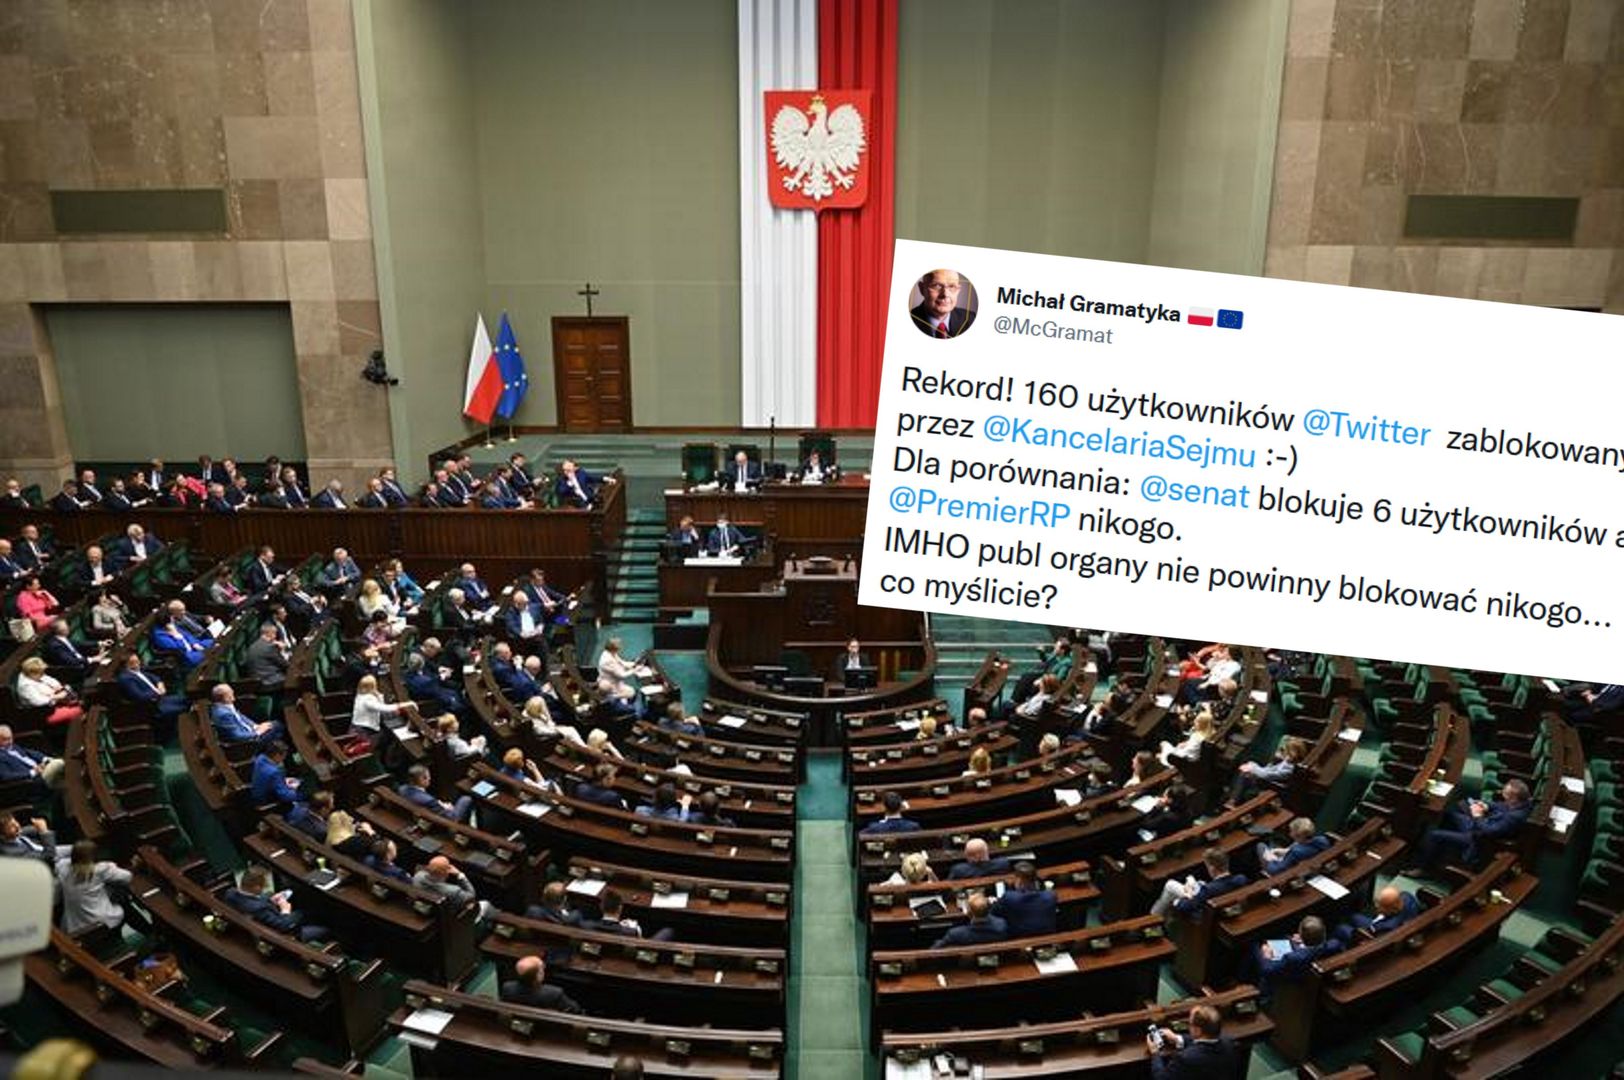 "Rekord!". Pokazał, ile osób zablokowała Kancelaria Sejmu na Twitterze